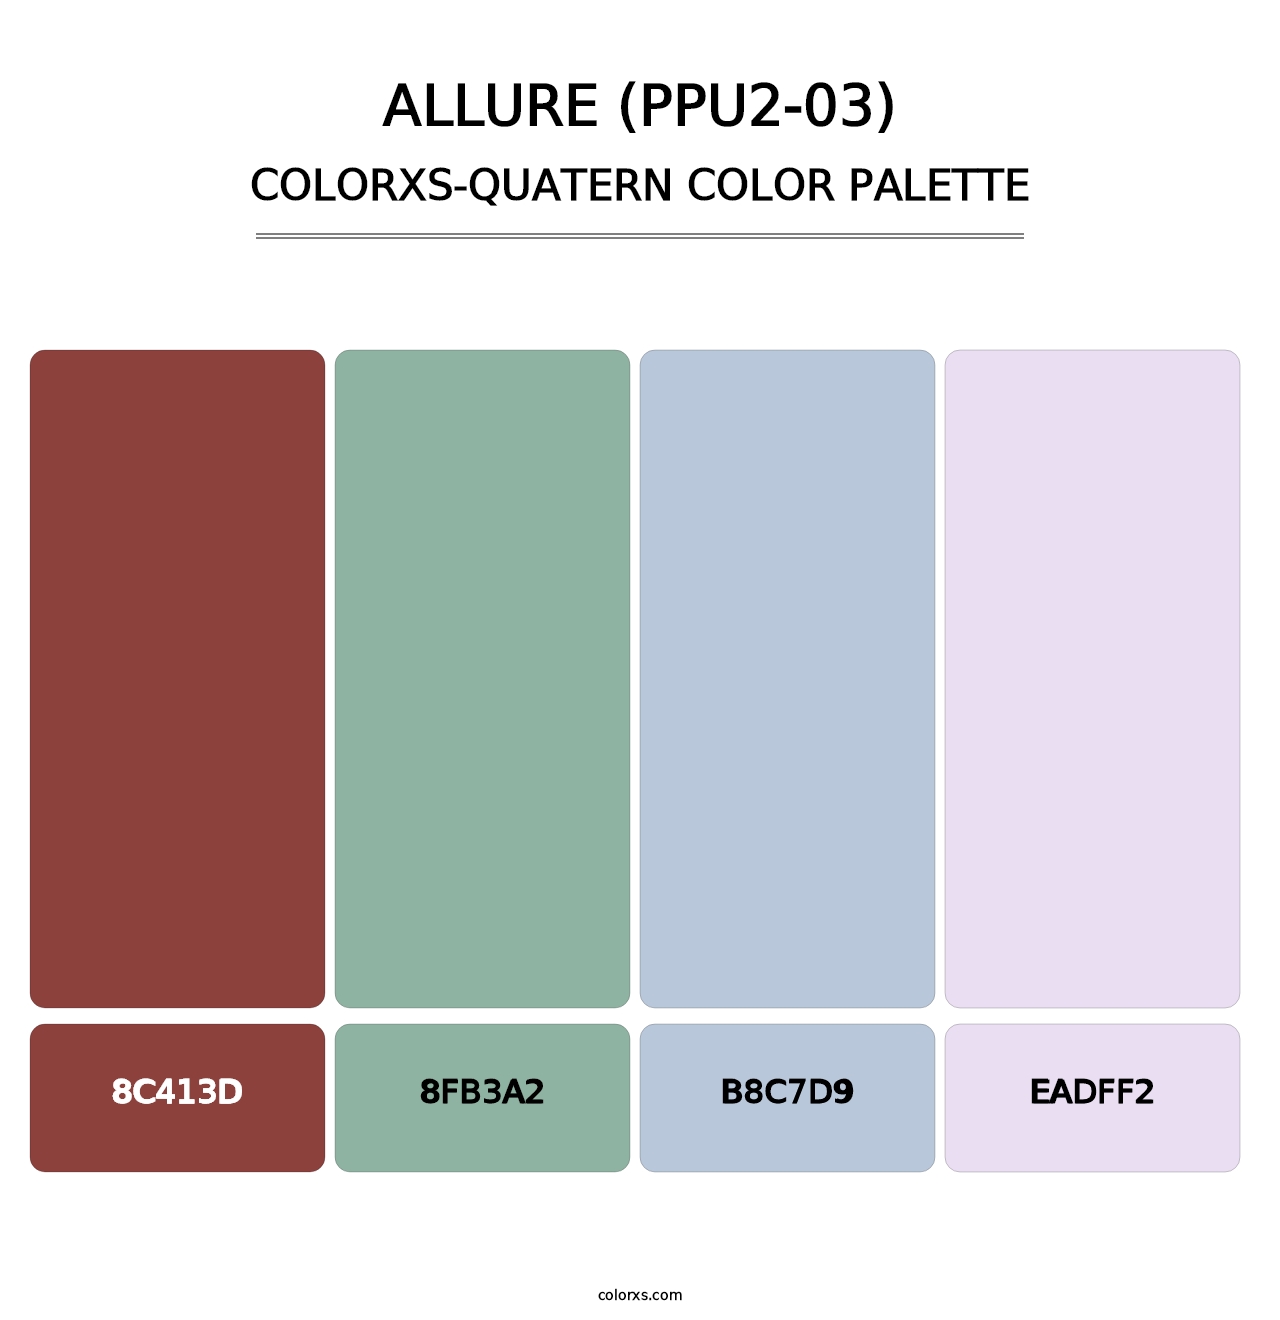 Allure (PPU2-03) - Colorxs Quatern Palette